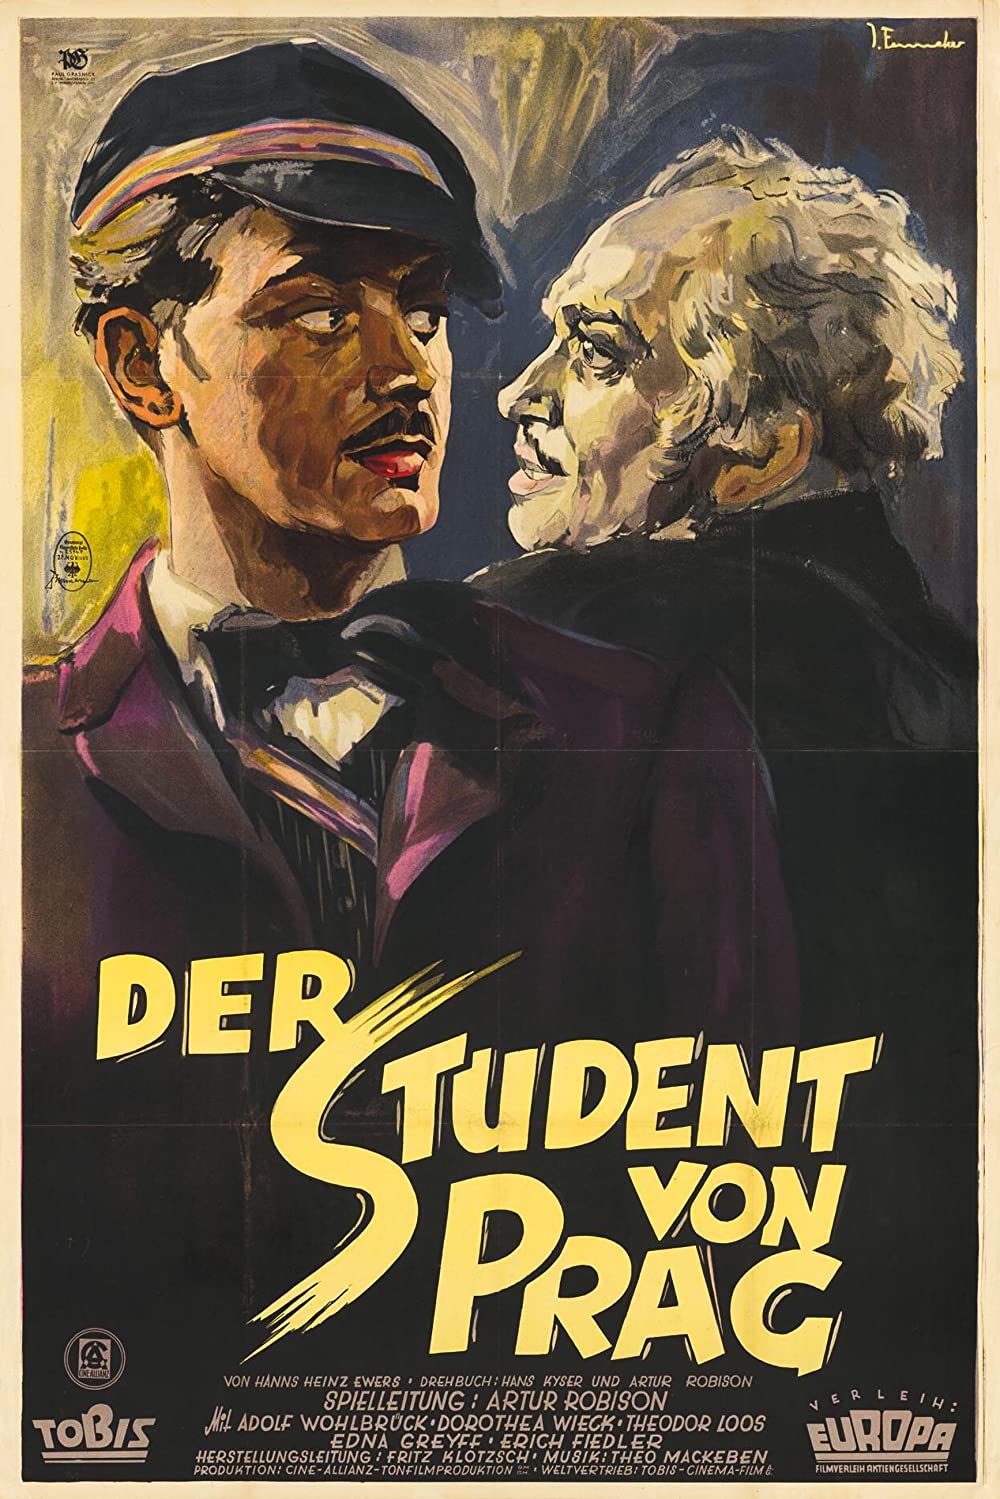 Filmbeschreibung zu Der Student von Prag (1926)